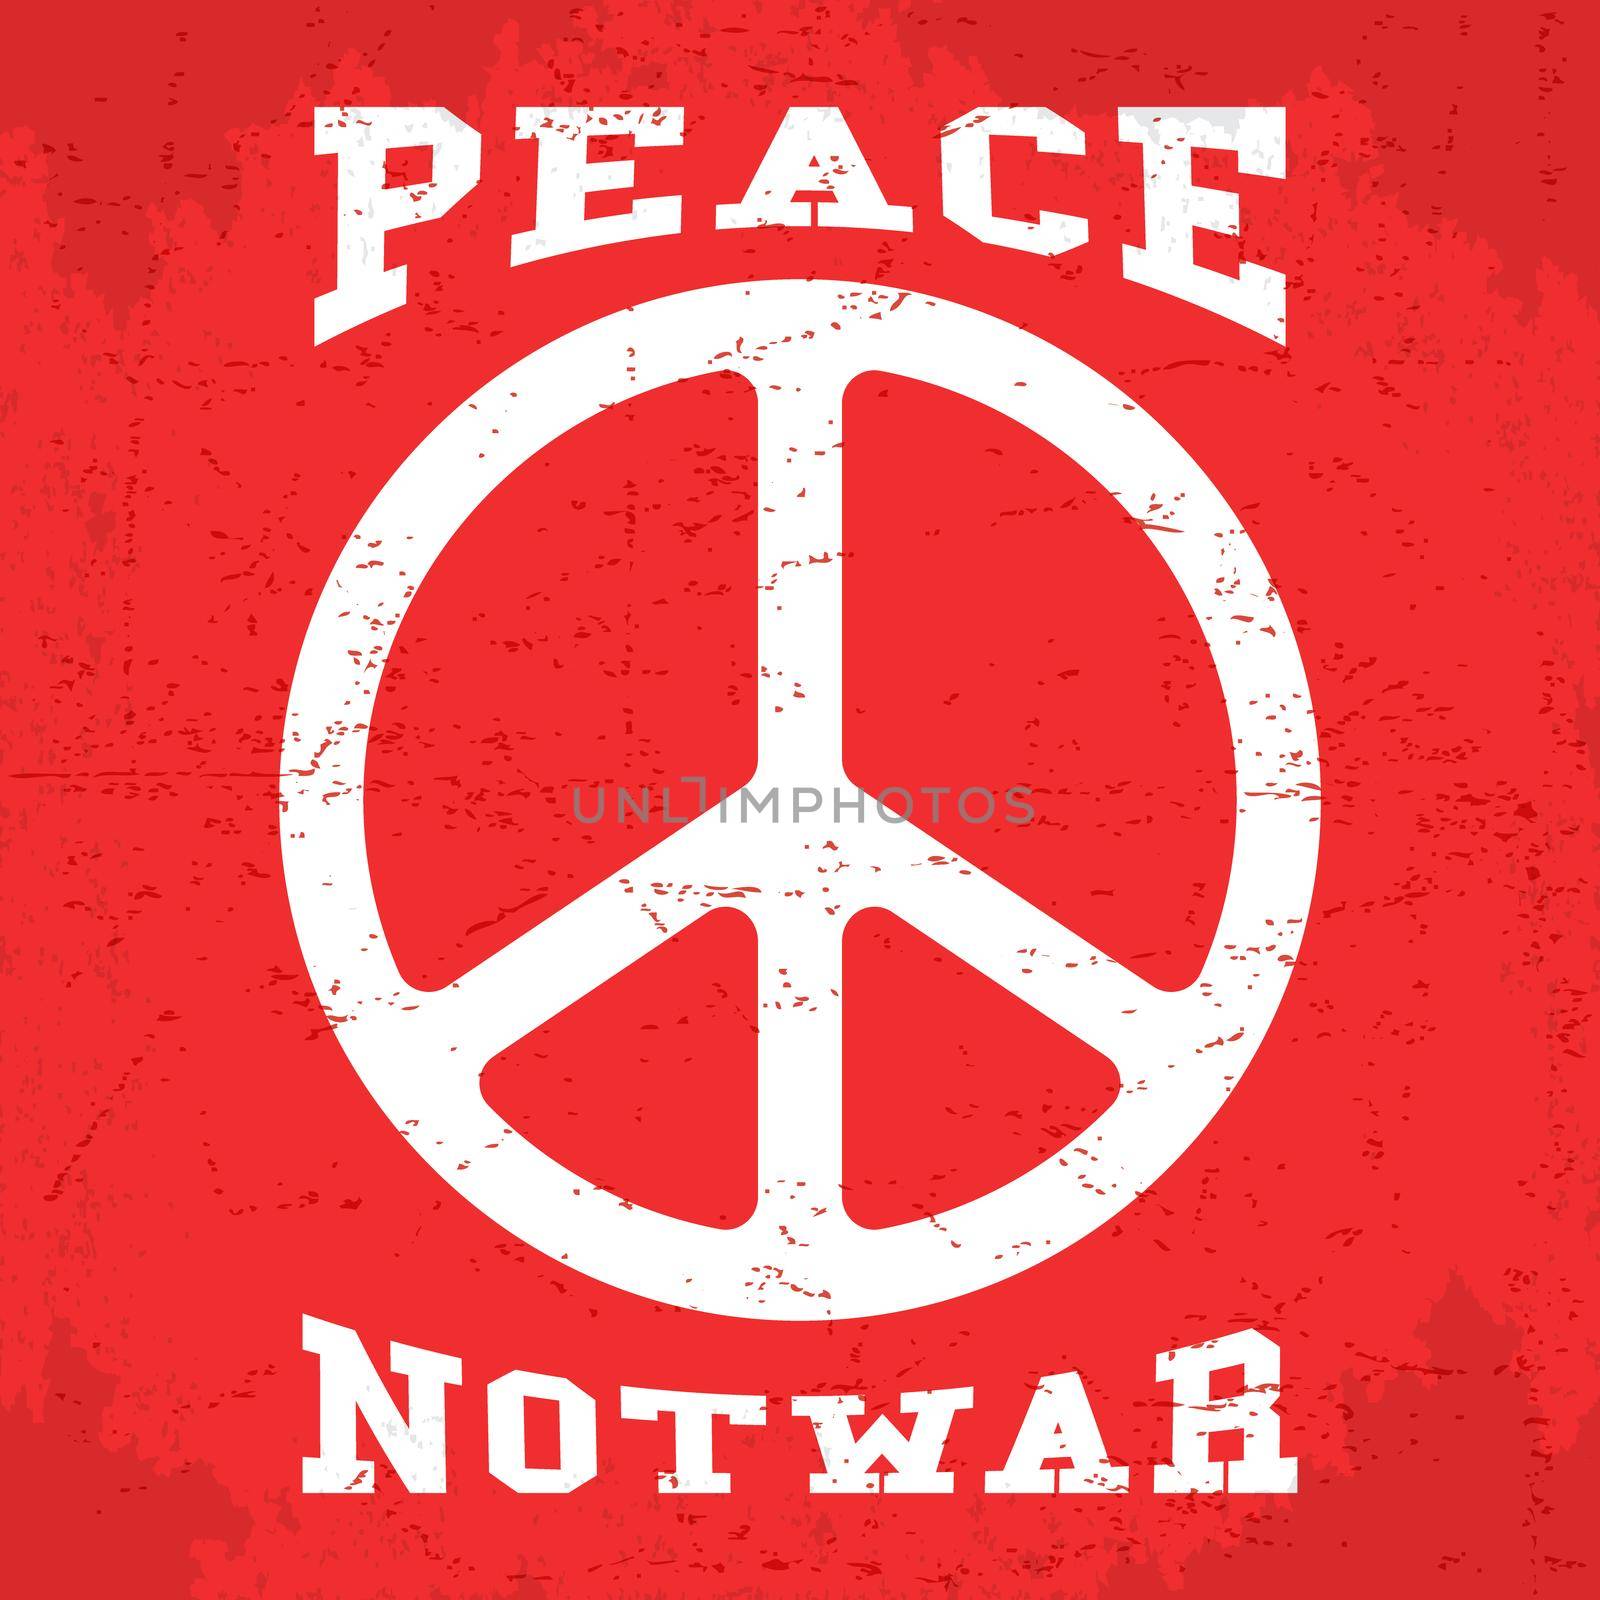 Vintage peace poster by Bobnevv